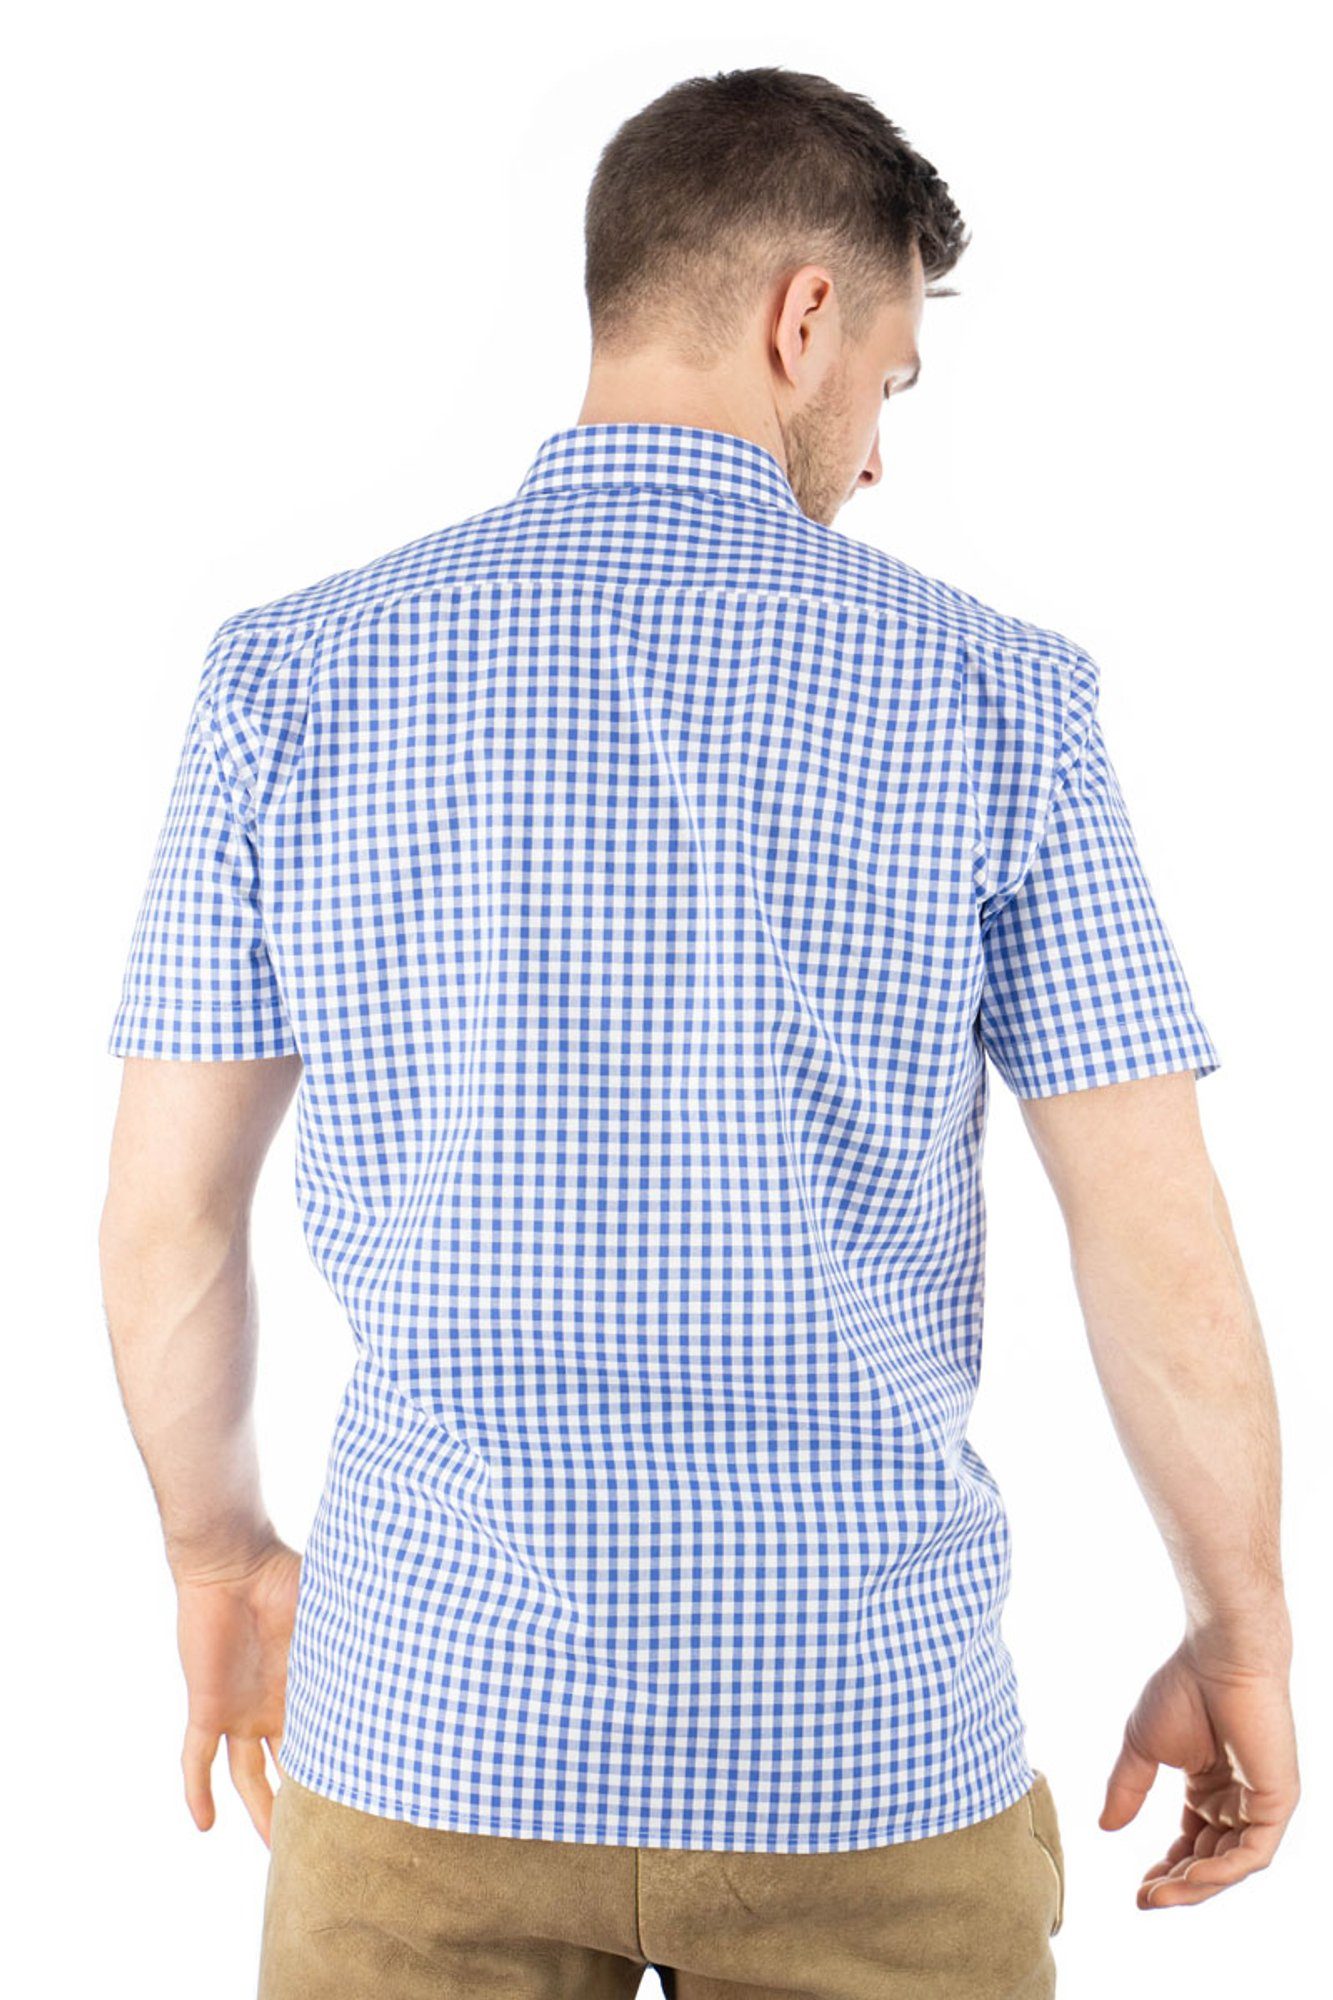 mit OS-Trachten Brusttasche mit aufgesetzter Trachtenhemd Kurzarmhemd mittelblau Hirsch-Stickerei Zihul